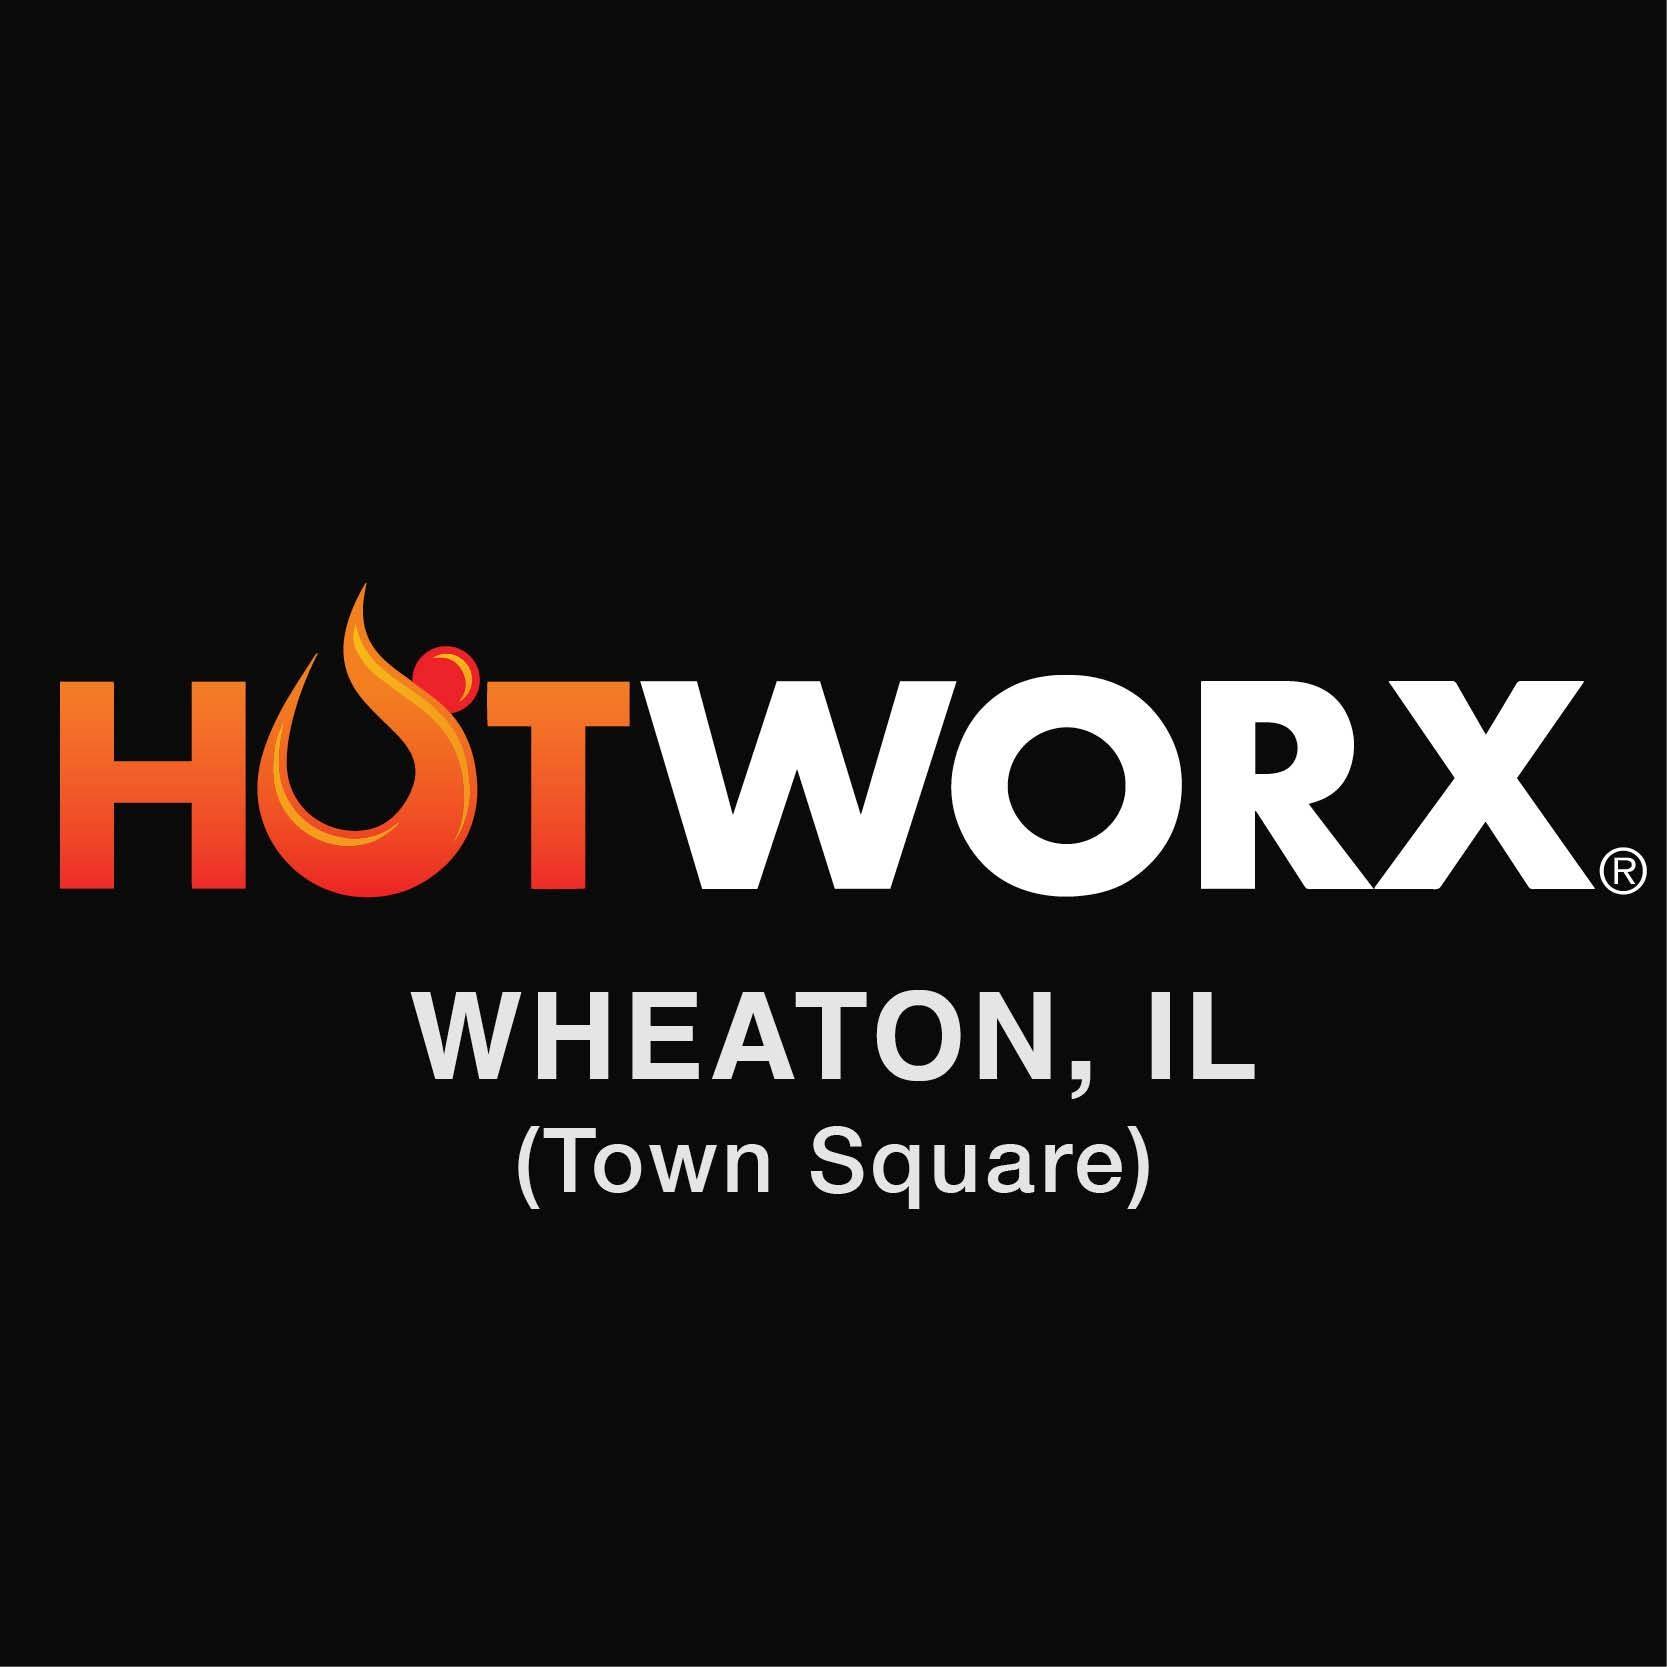 HOTWORX - Wheaton, IL (Town Square)'s Logo